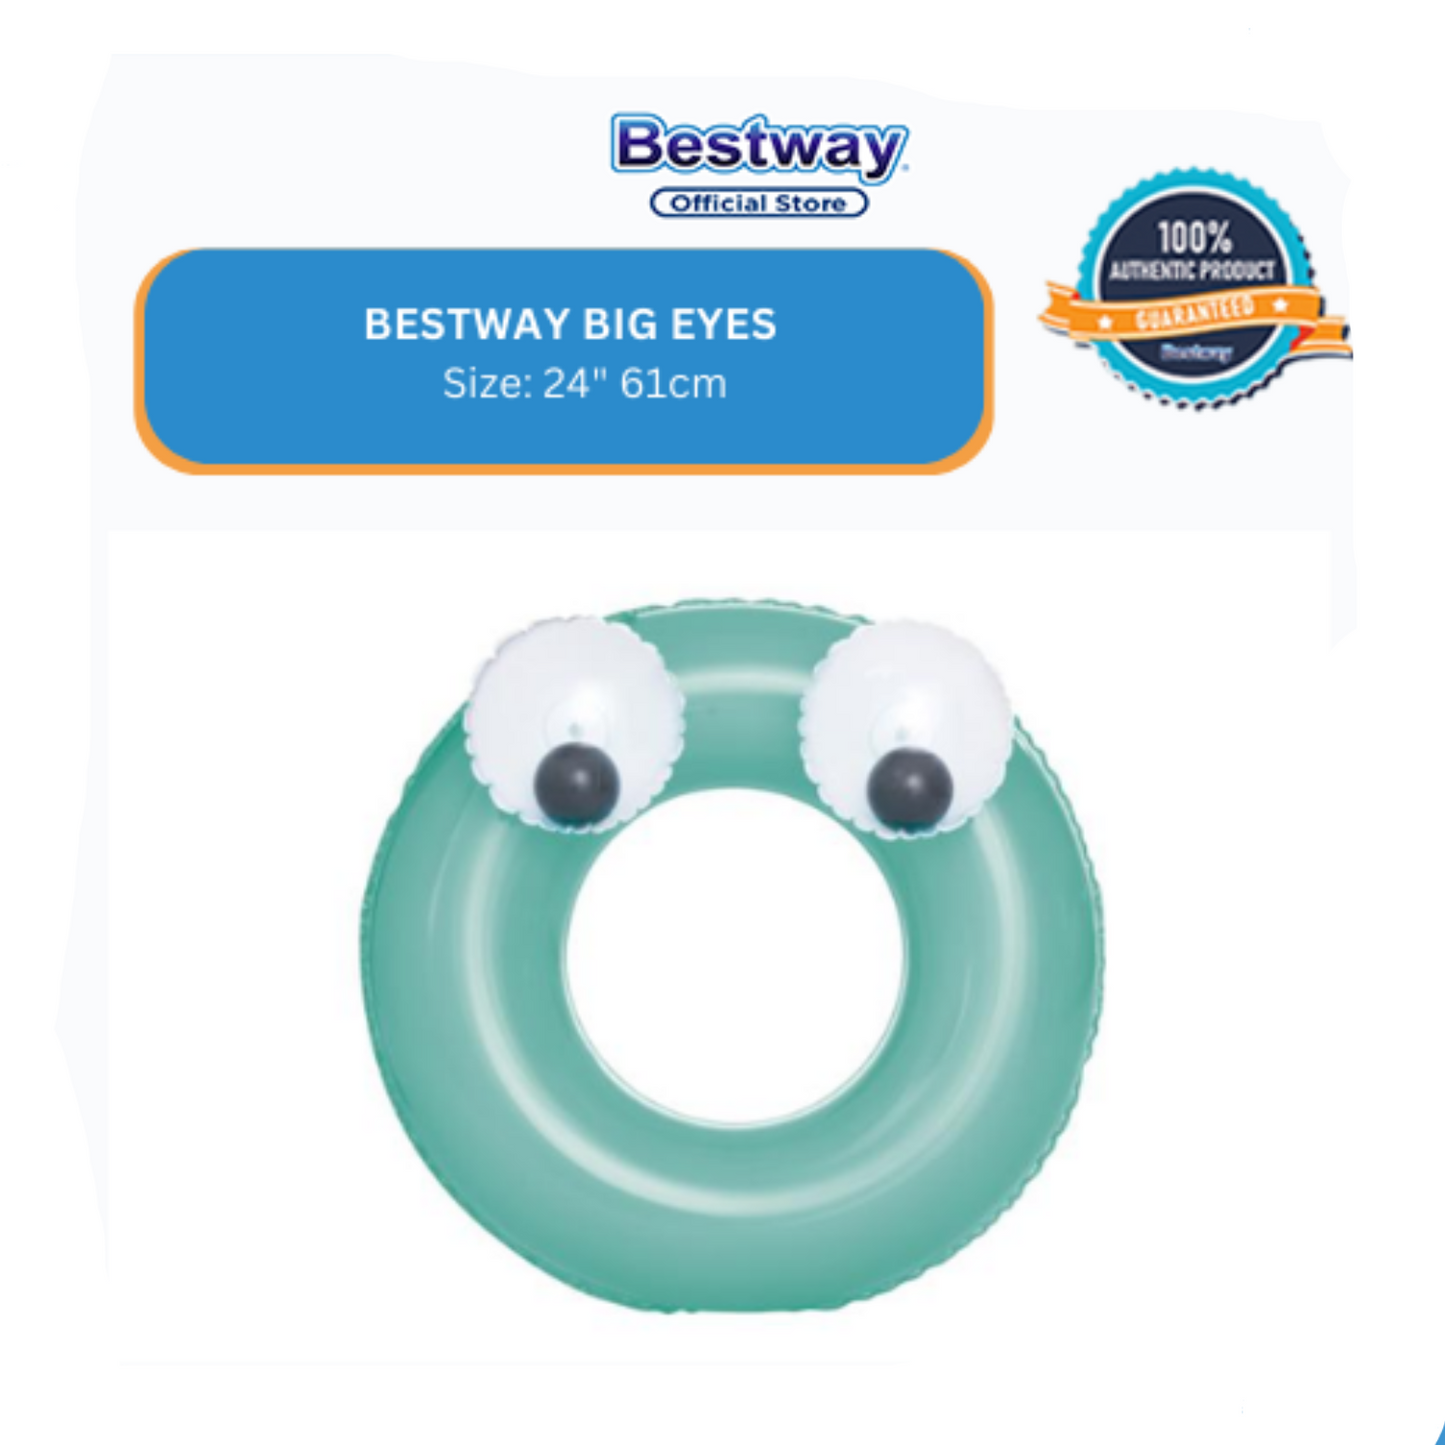 Bestway 24"61cm big eyes